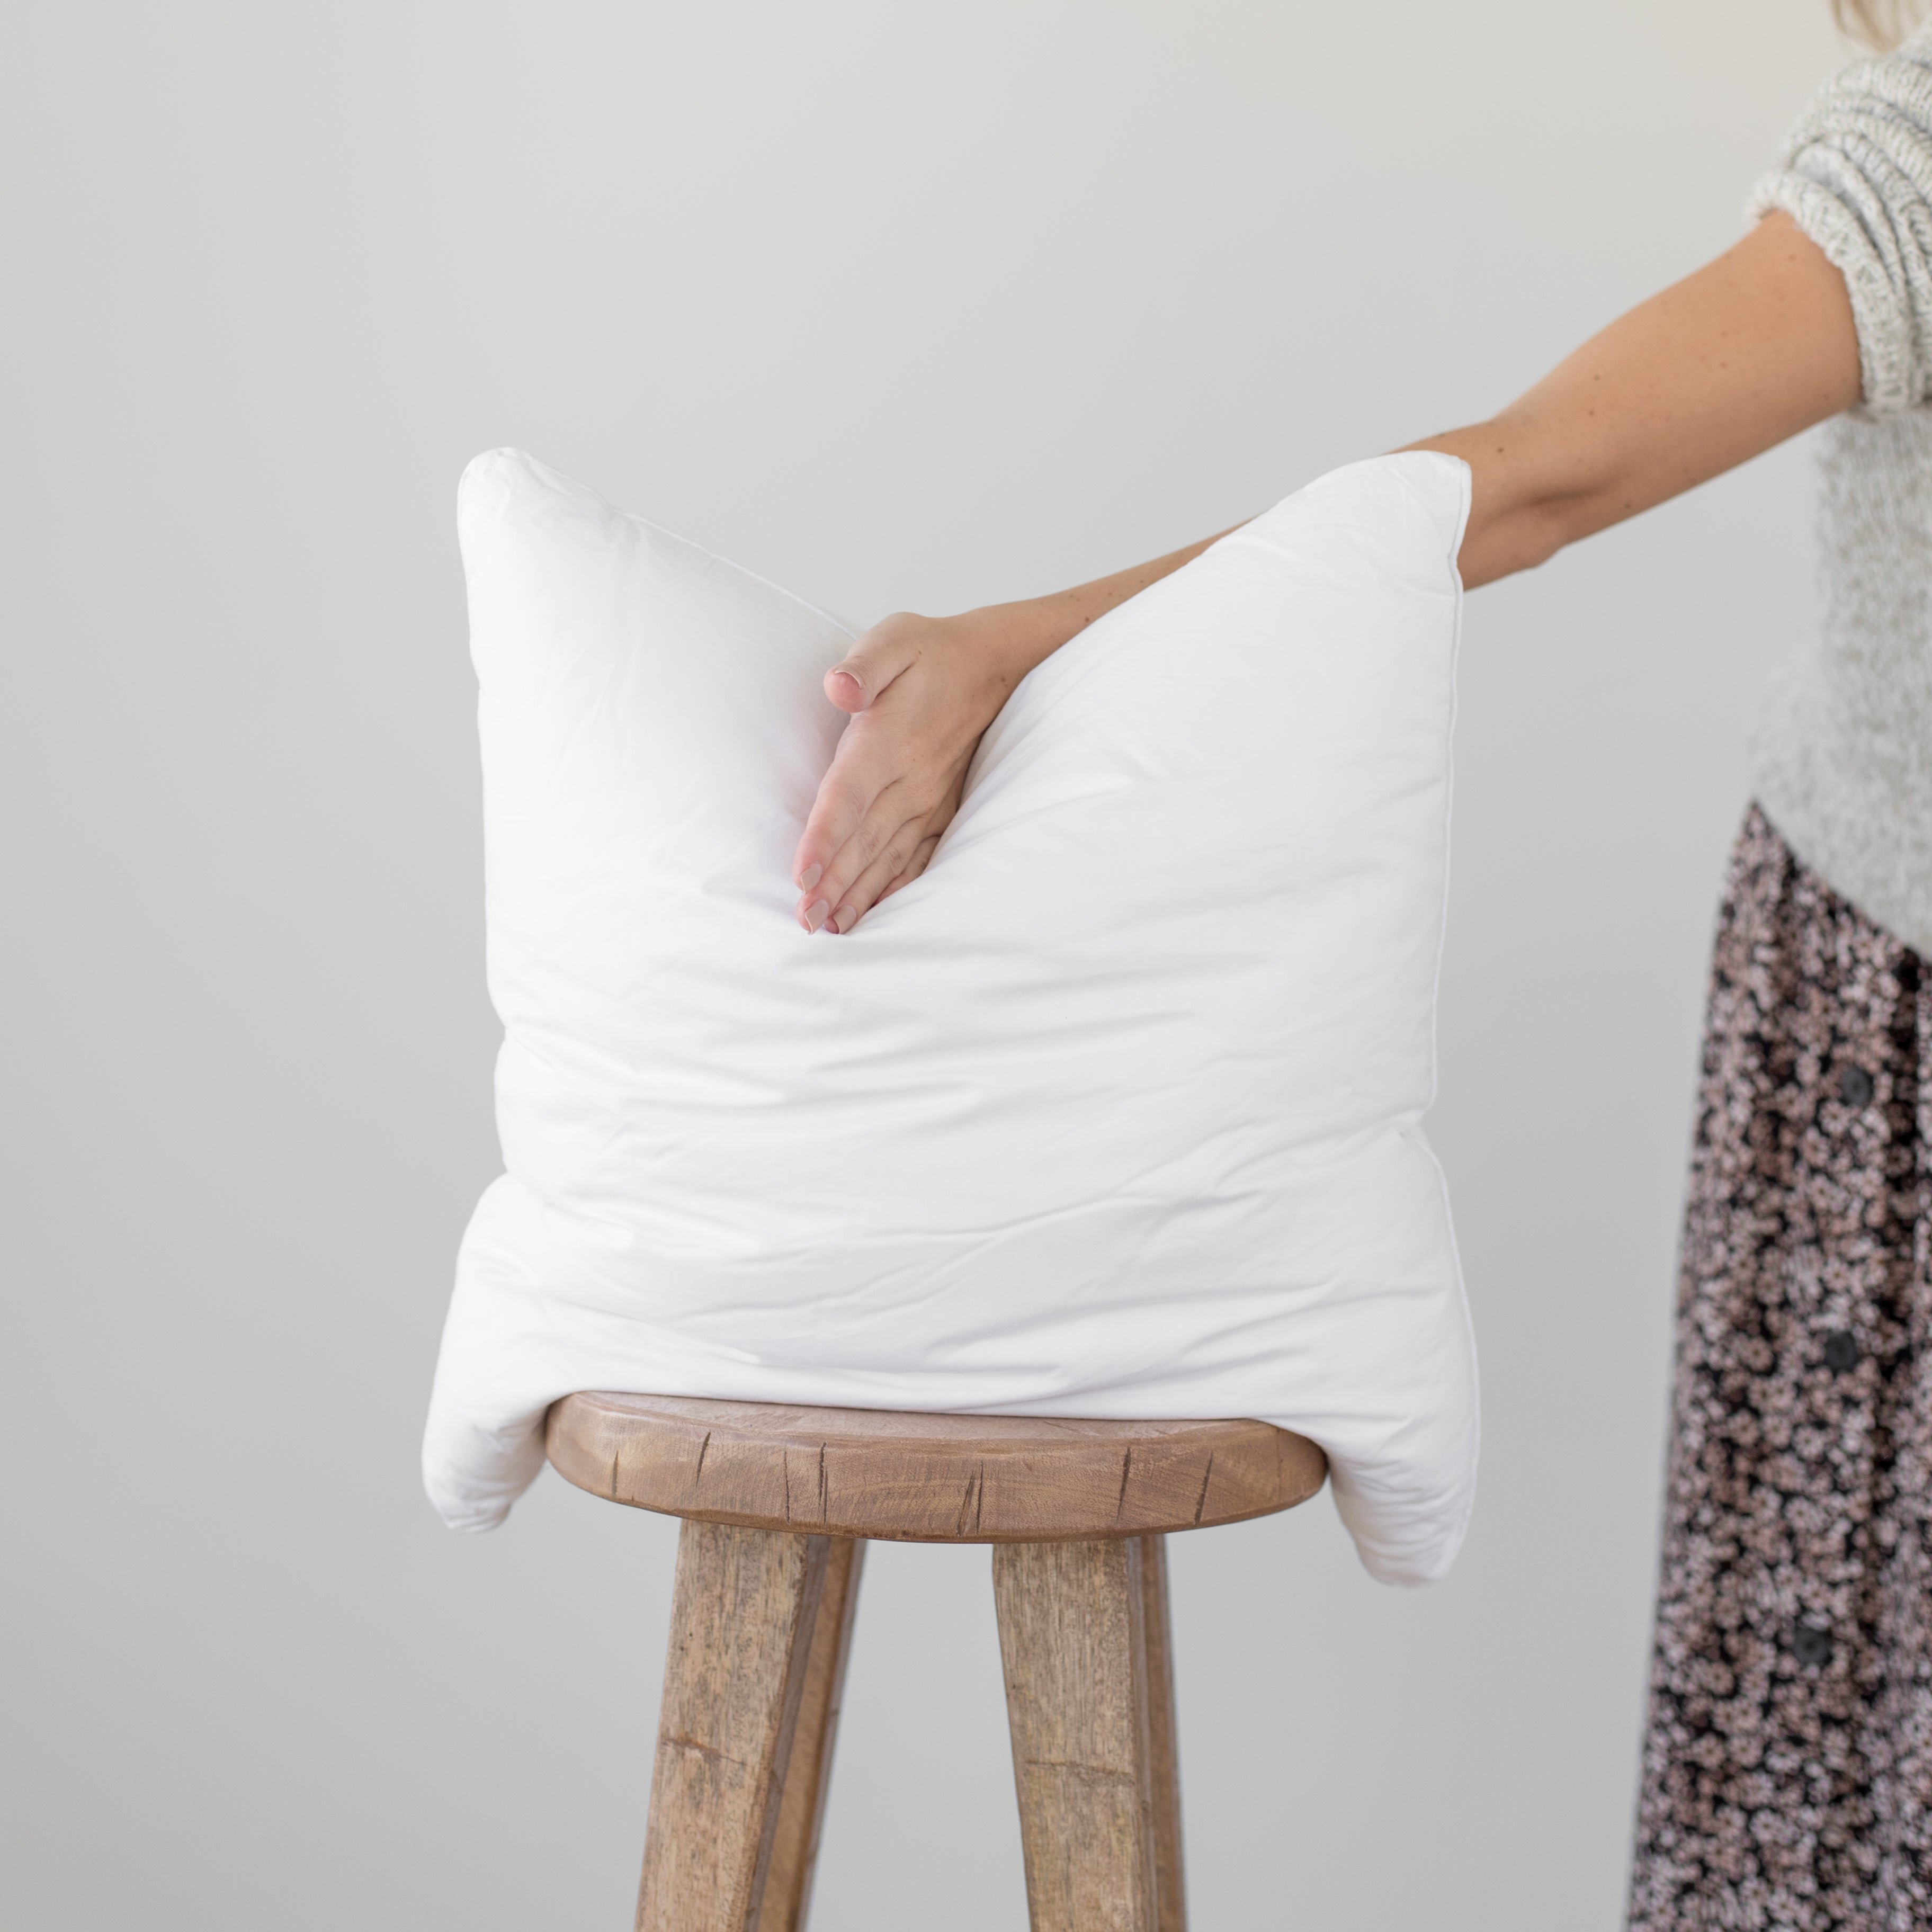 20 x 20 Square Down Alternative White Pillow Insert | BOKSER Home